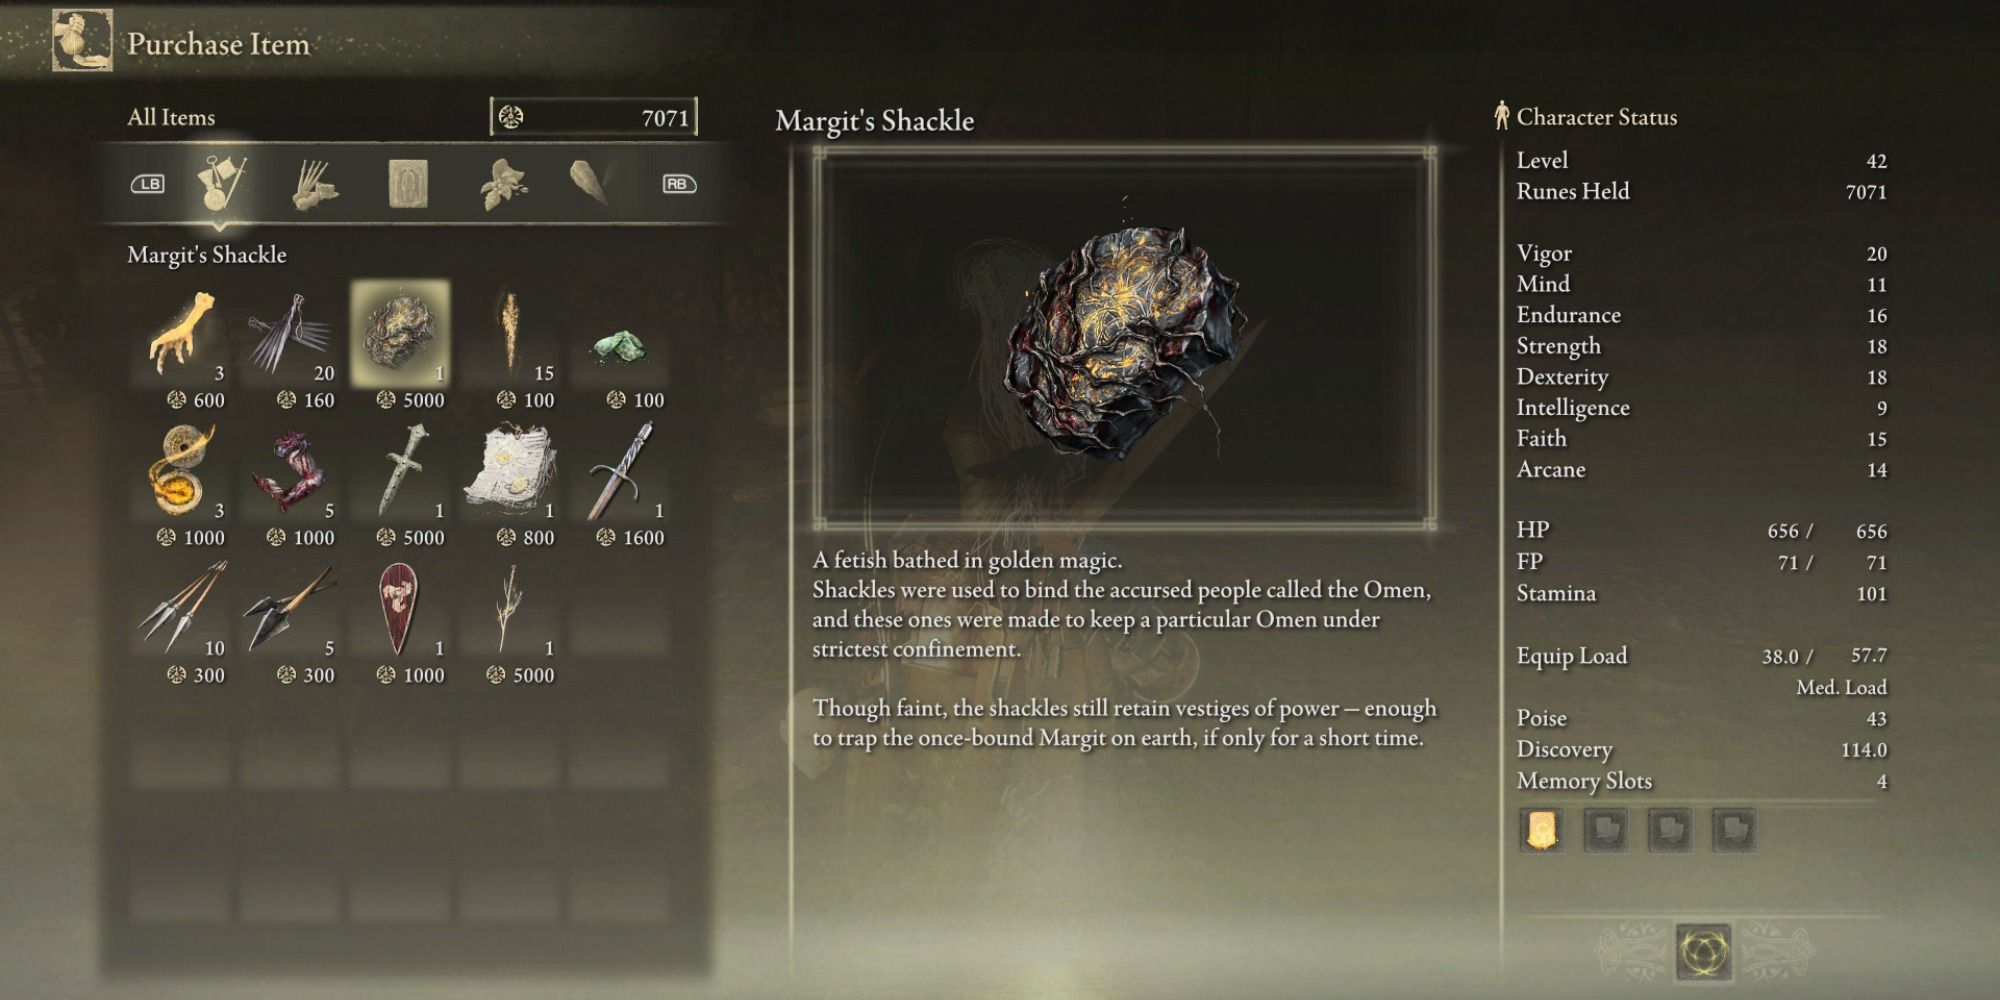 Margit's Shackle item and description in Elden Ring.